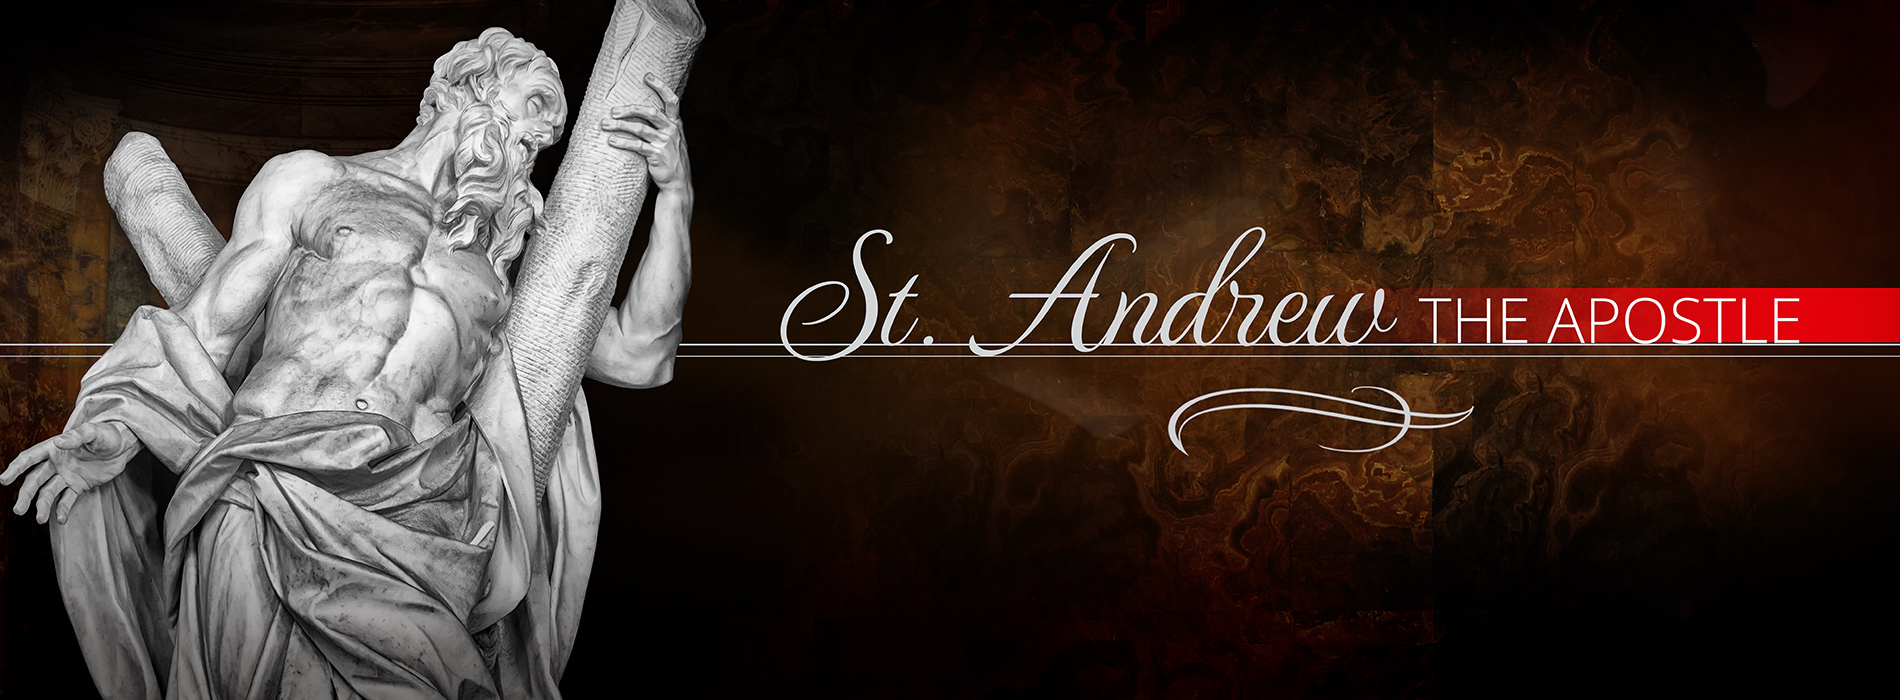 St. Andrew the Apostle